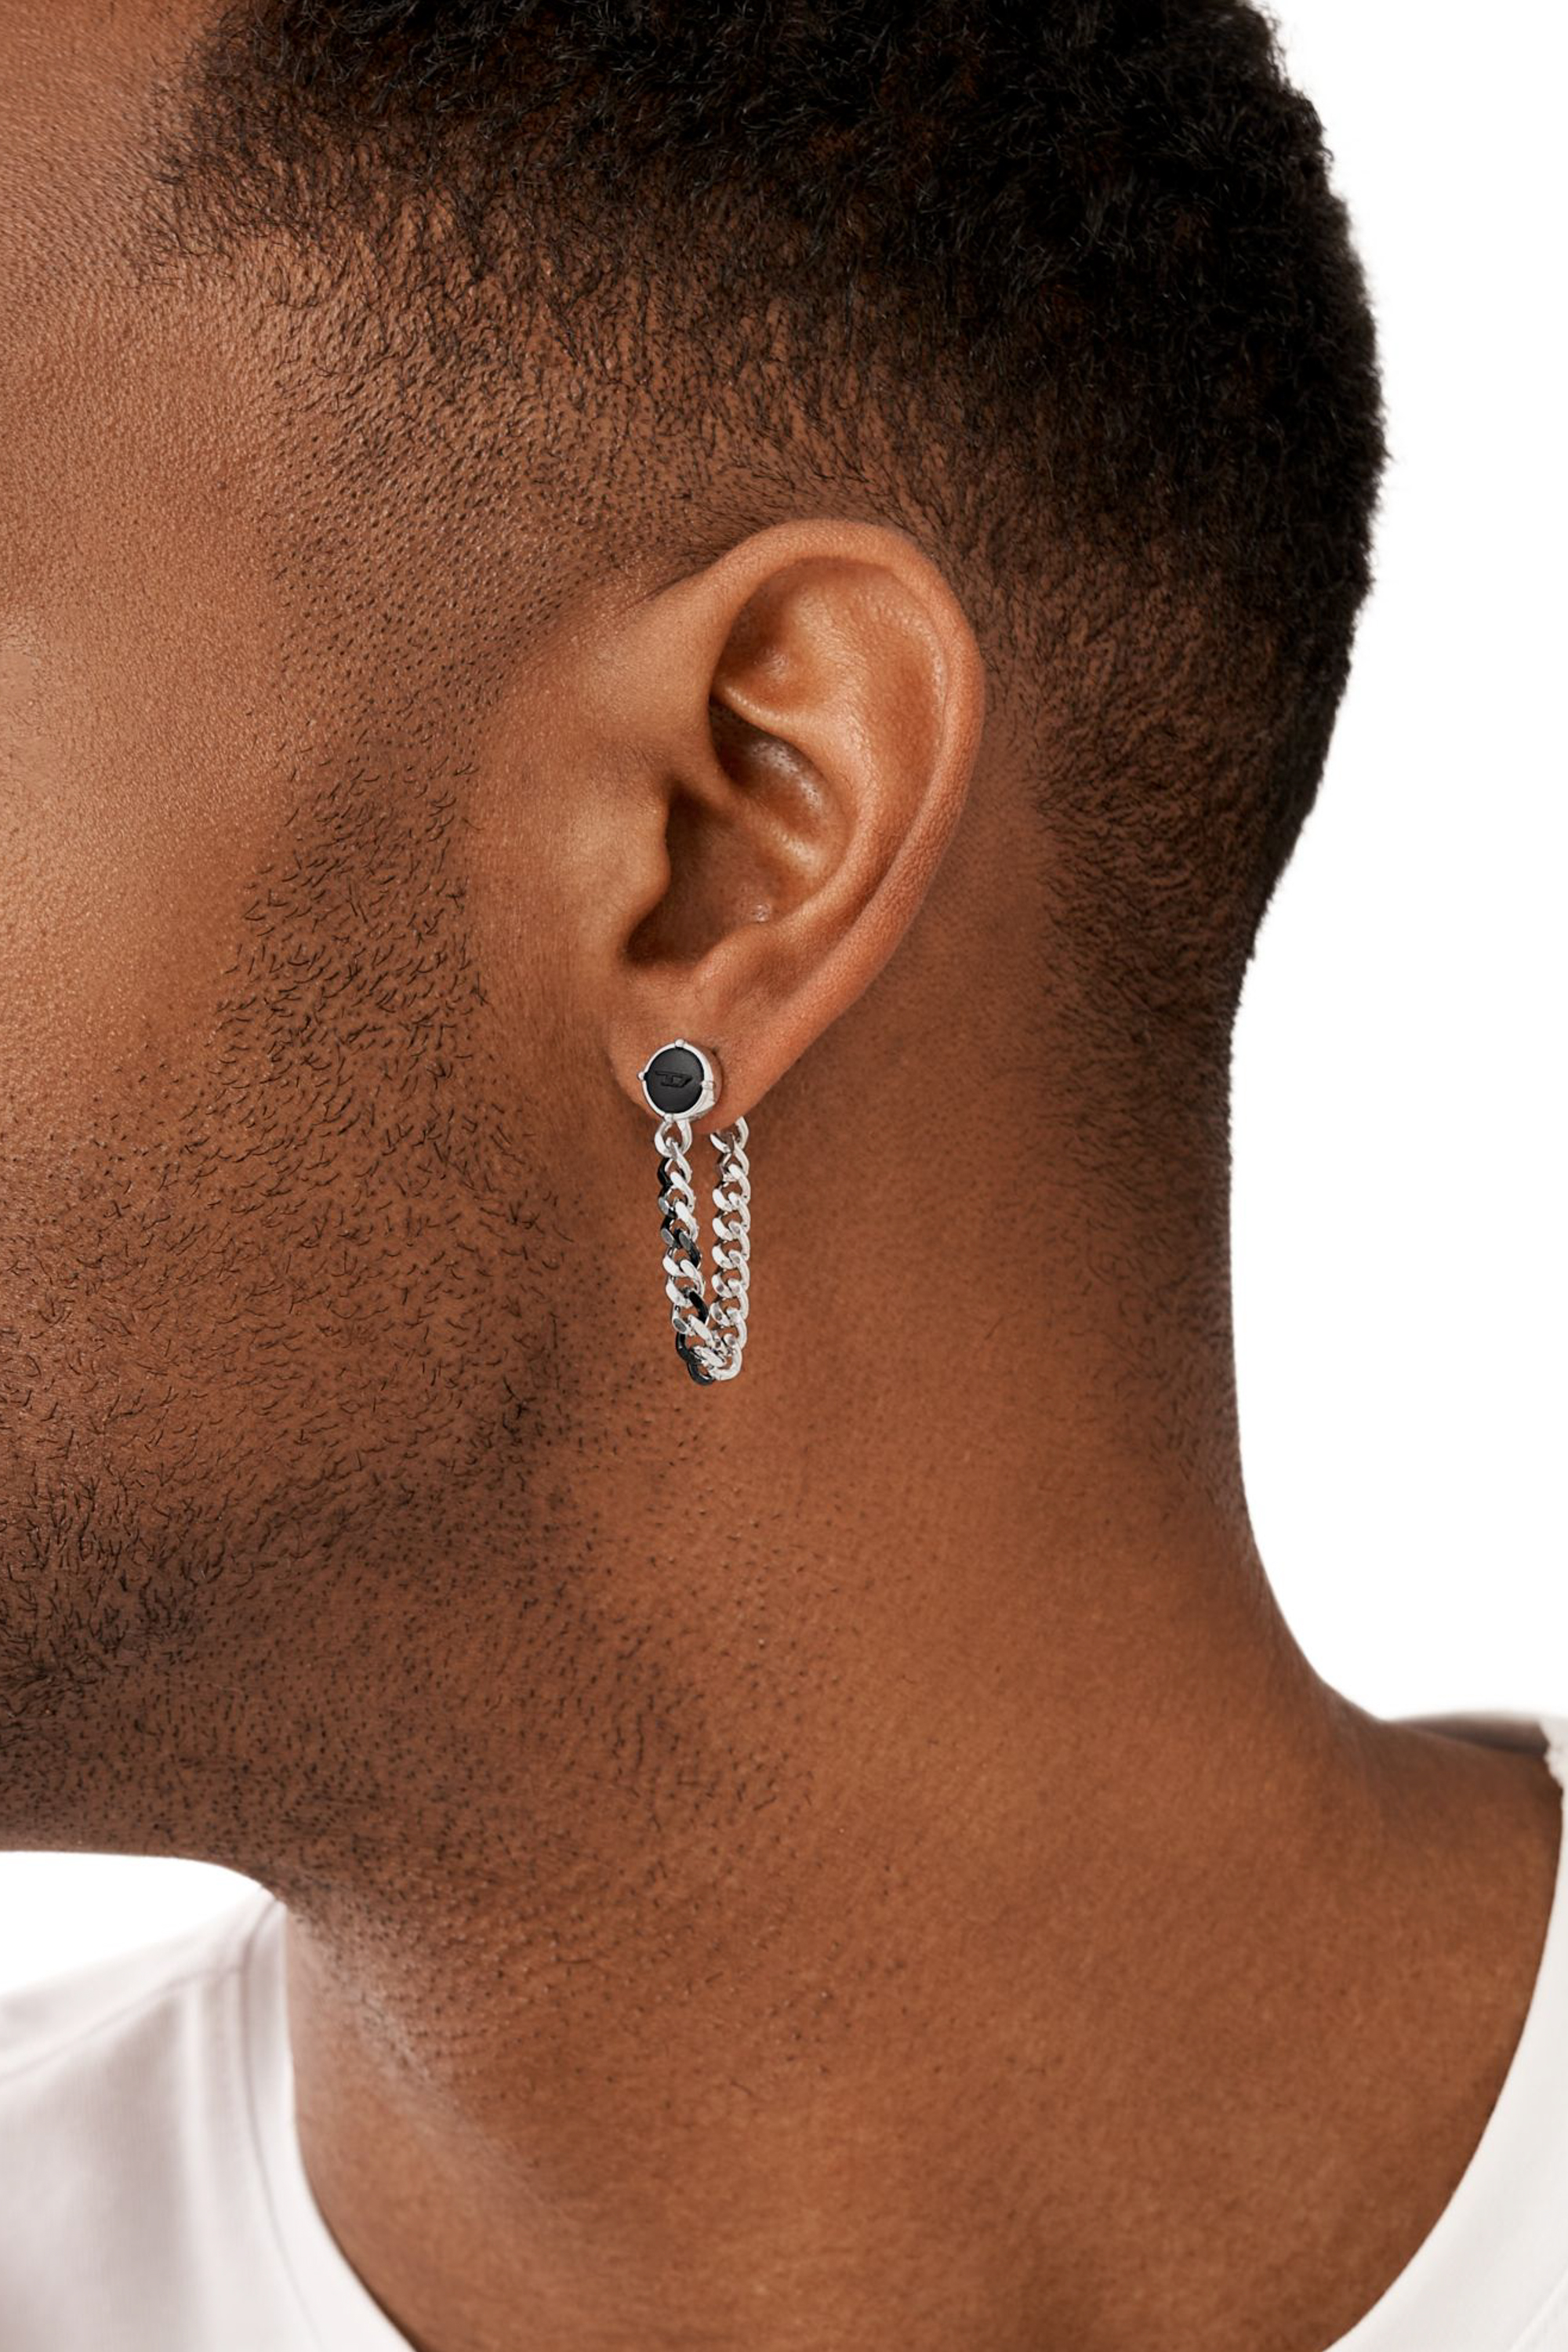 Diesel - DX1500, Man Stainless steel stud earring in Silver - Image 3